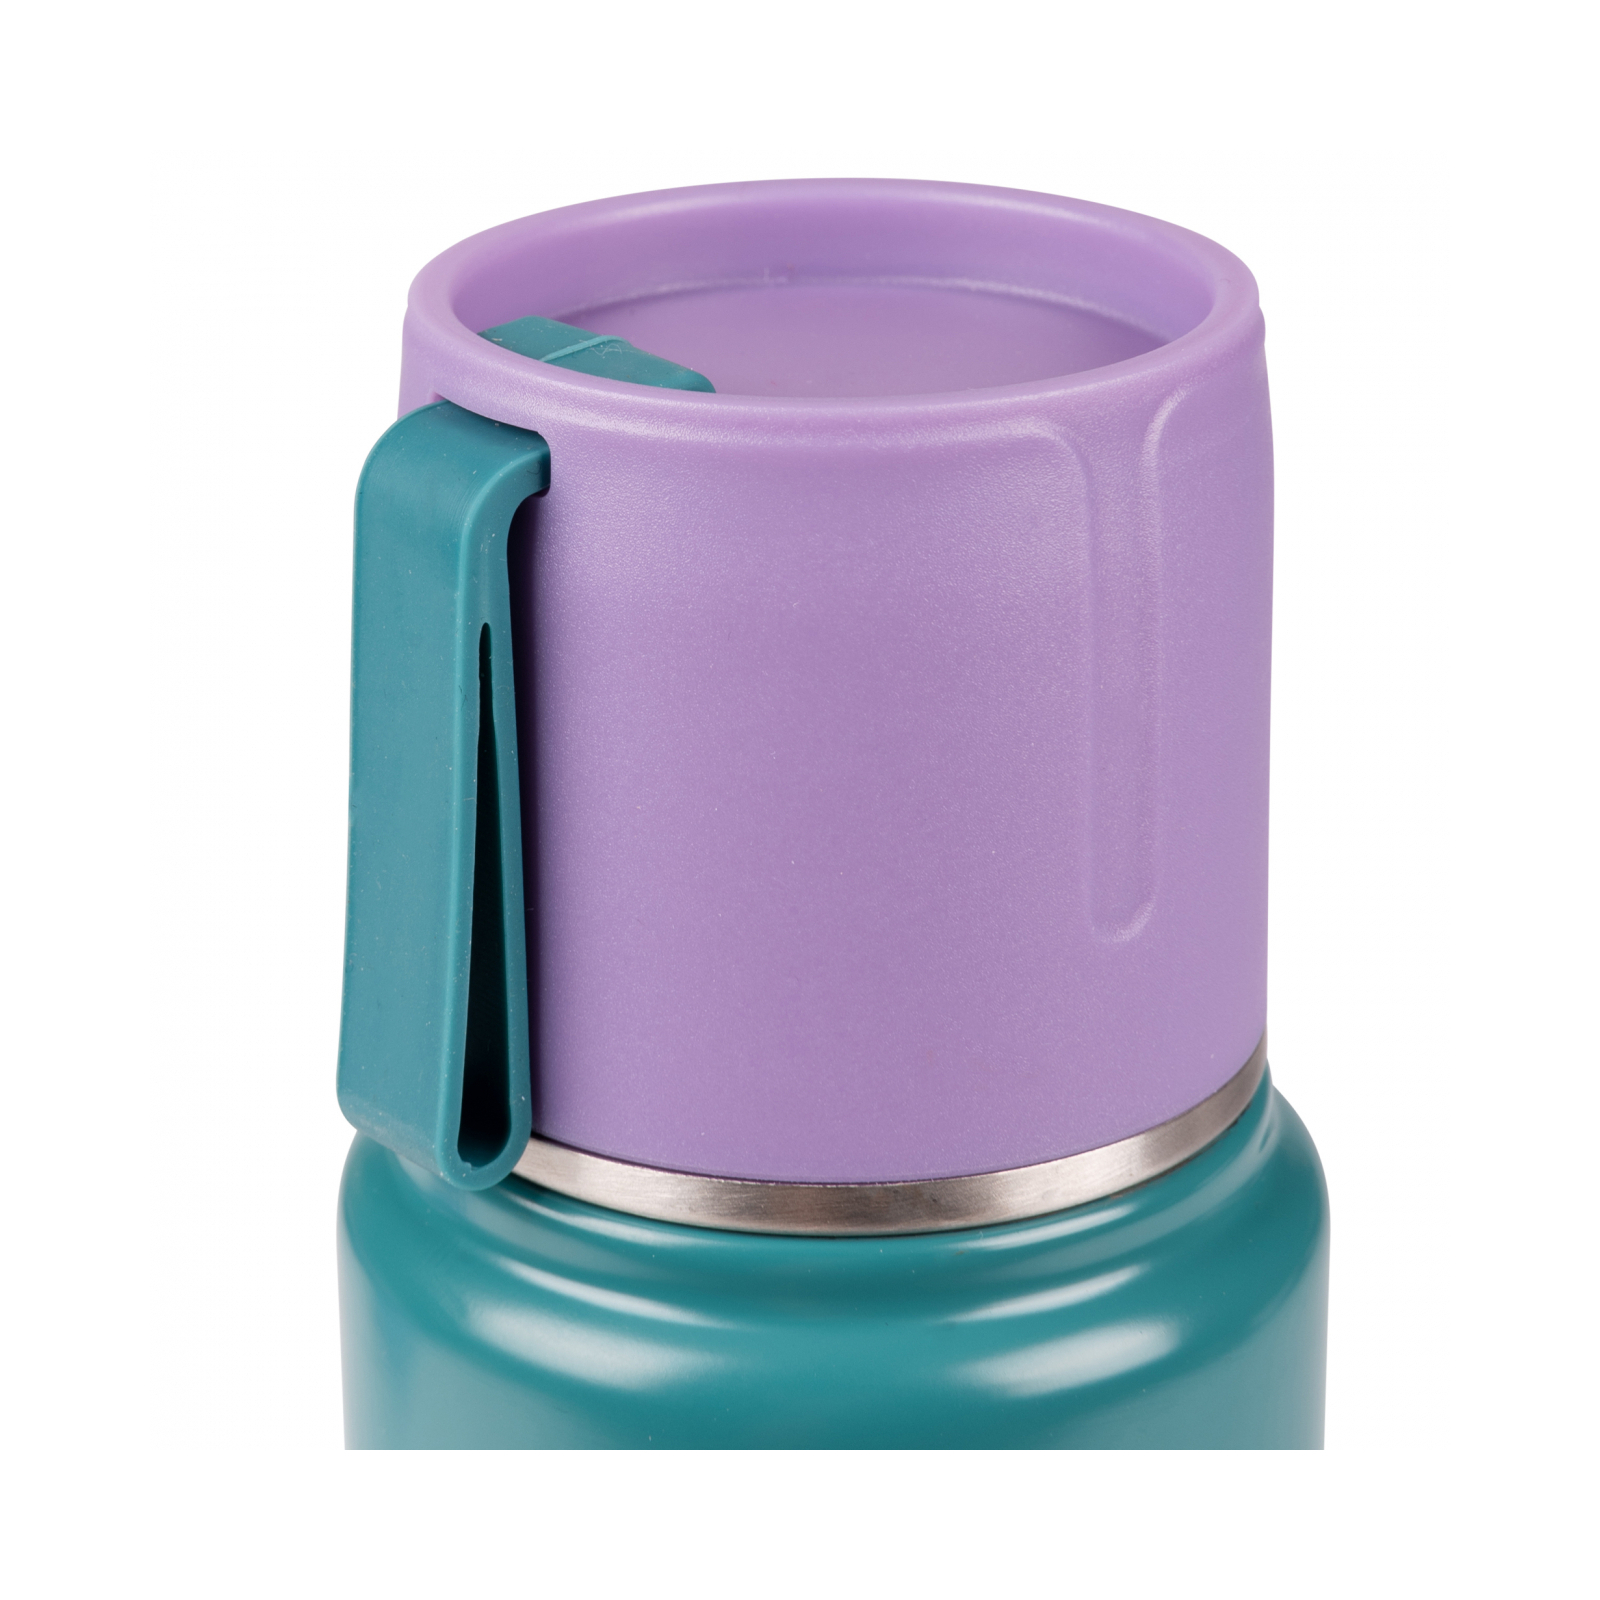 Поильник-непроливайка Yes Термос Fusion с чашкой, 420 мл, зеленый (708207) изображение 5